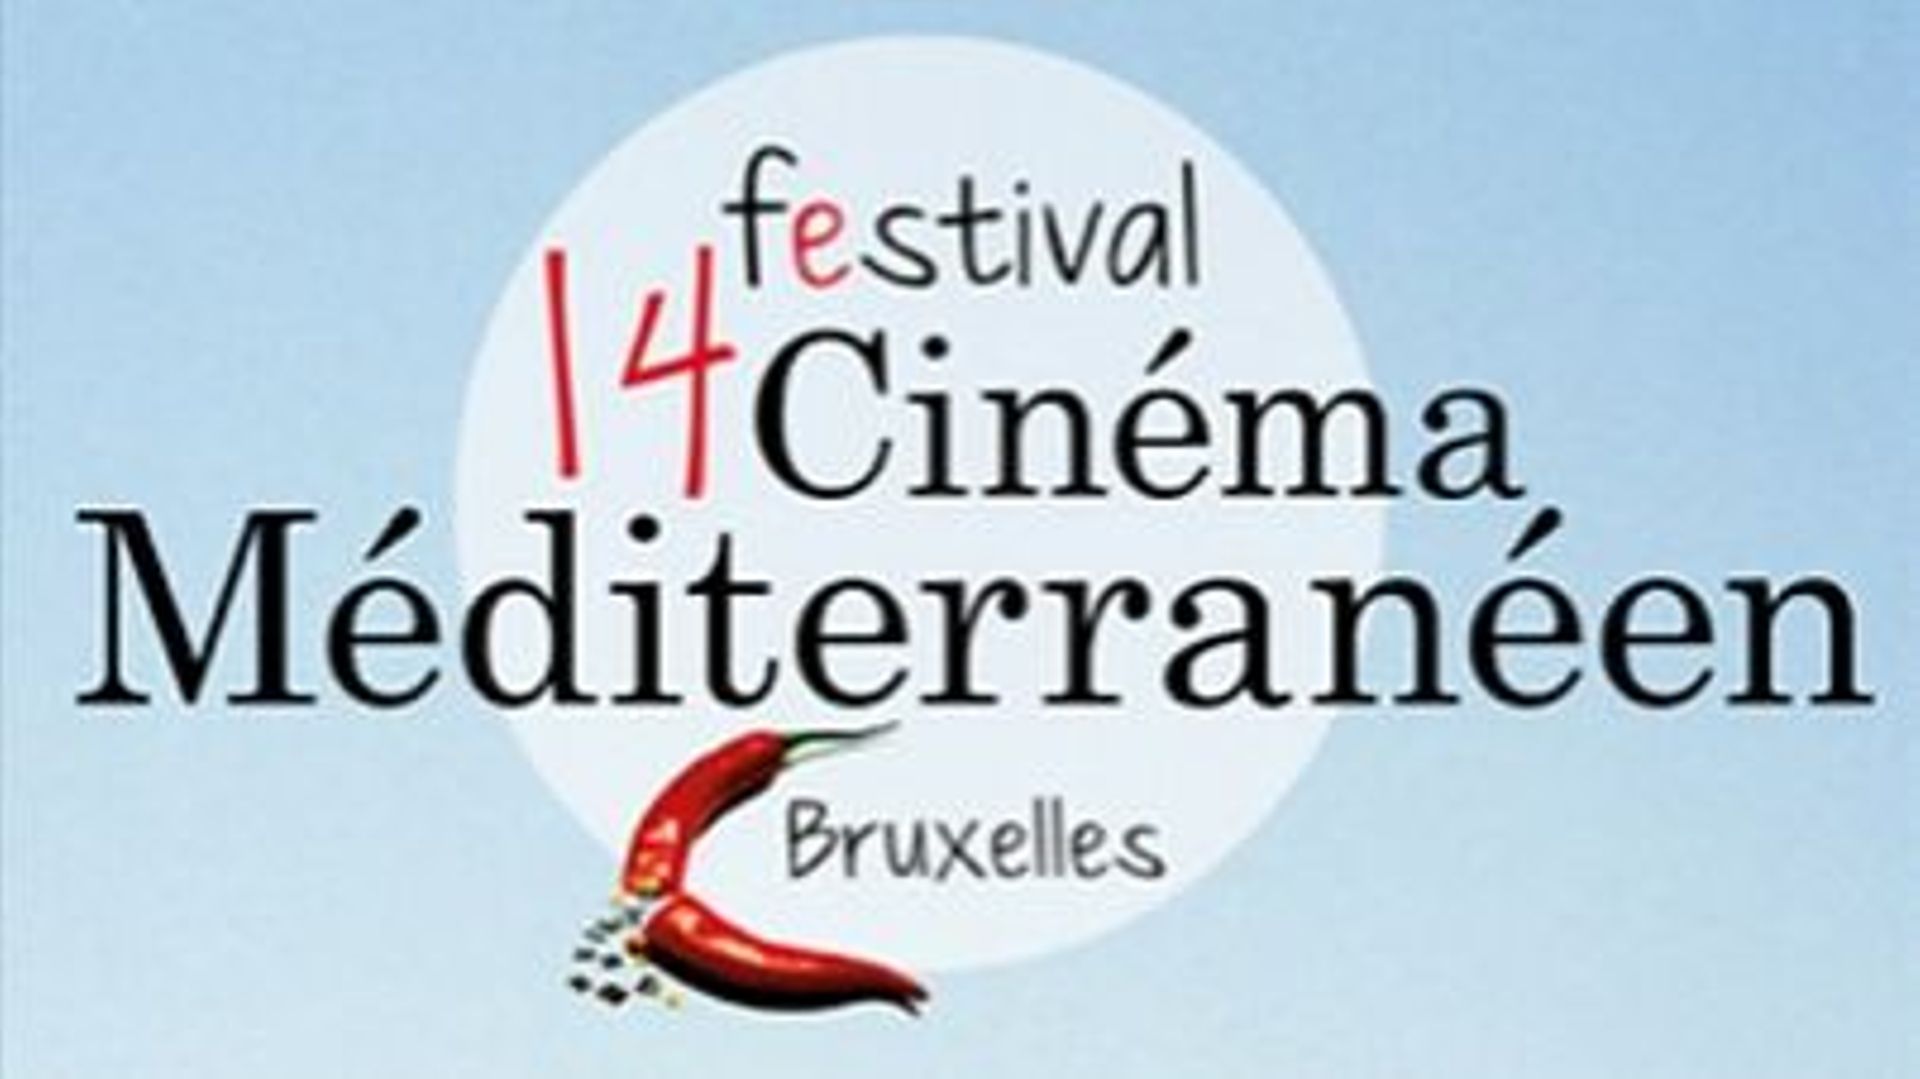 pour-ses-25-ans-le-festival-cinema-mediterraneen-de-bruxelles-met-a-l-honneur-l-italie